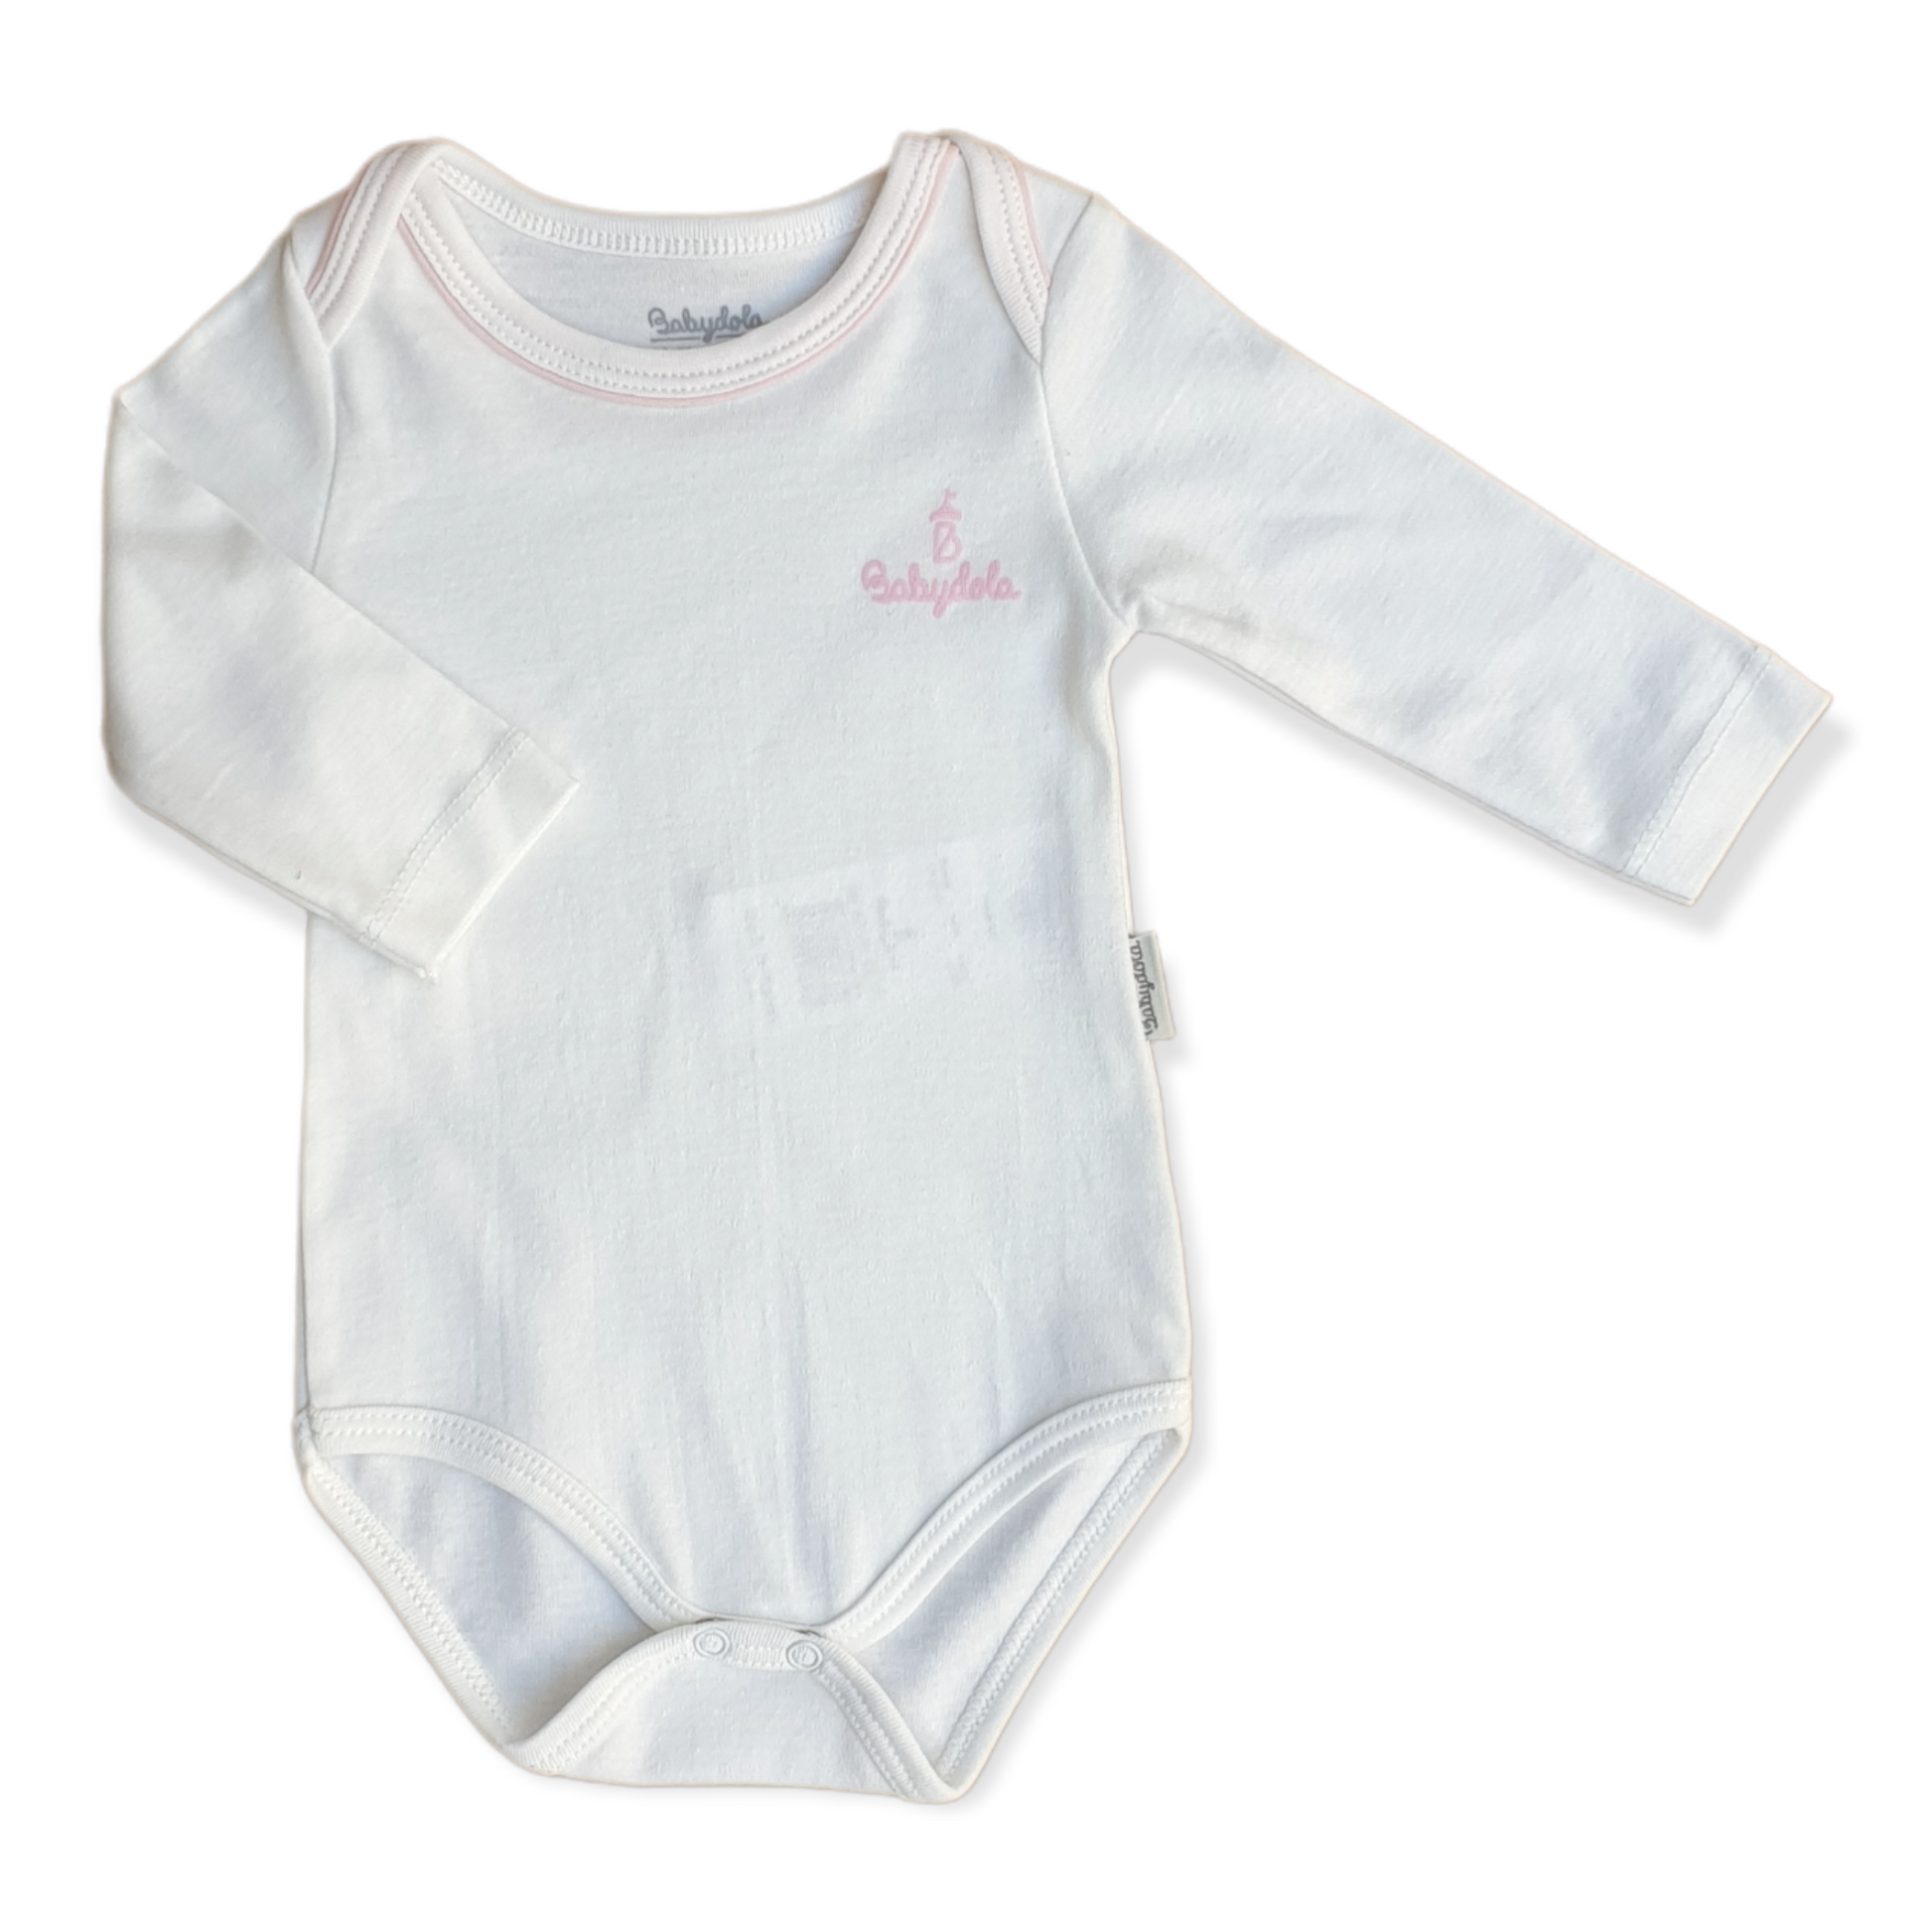 Babydola - Organic Cotton Long Sleeve Off-White Basic Unisex Body